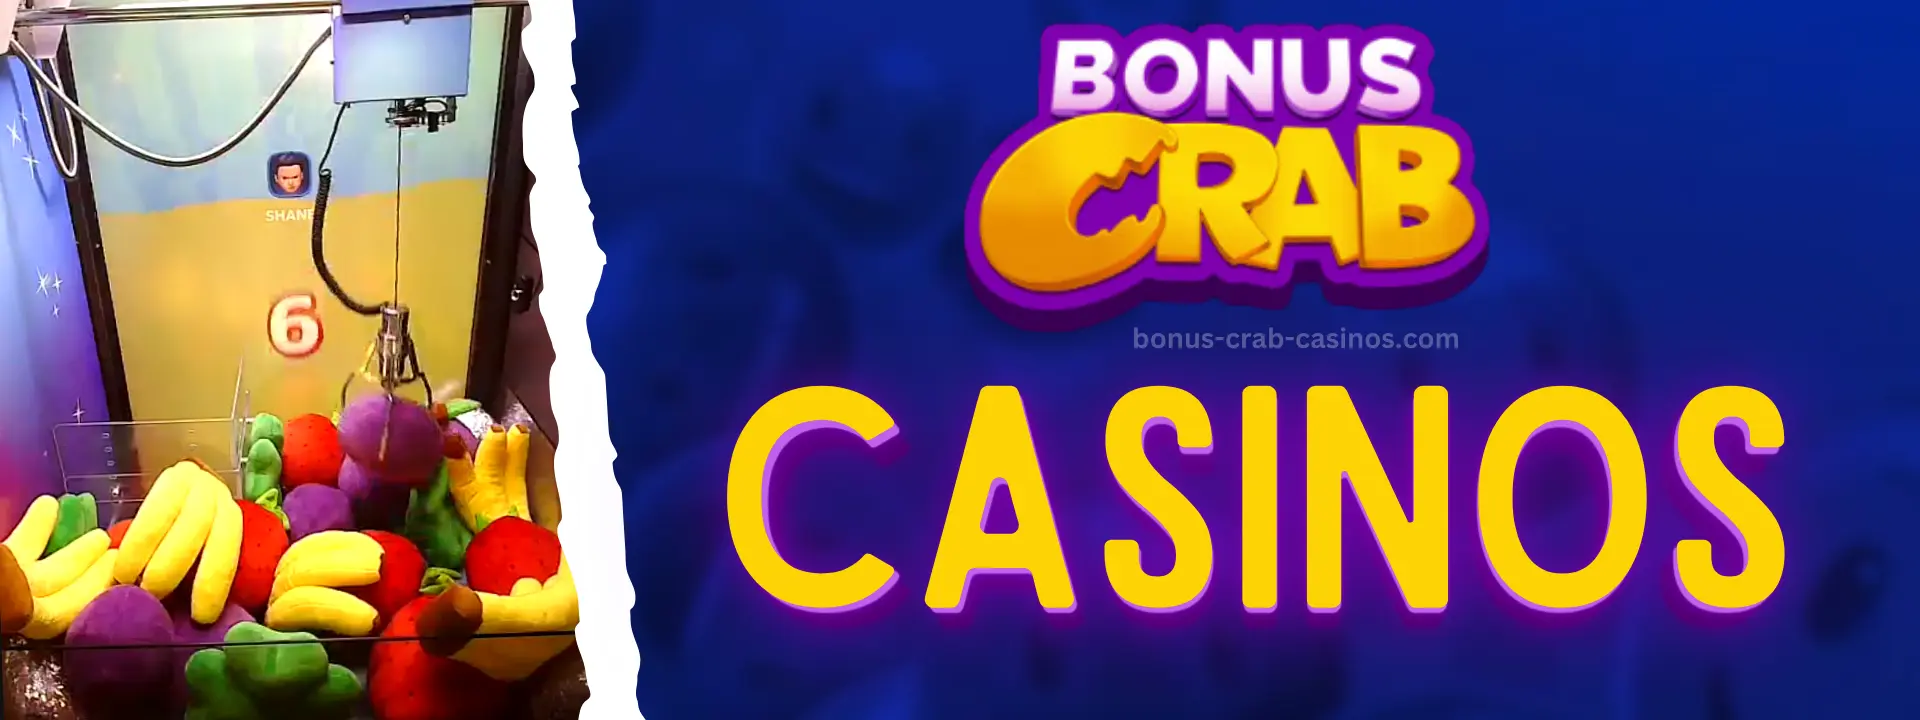 bonus-crab-casinos.com